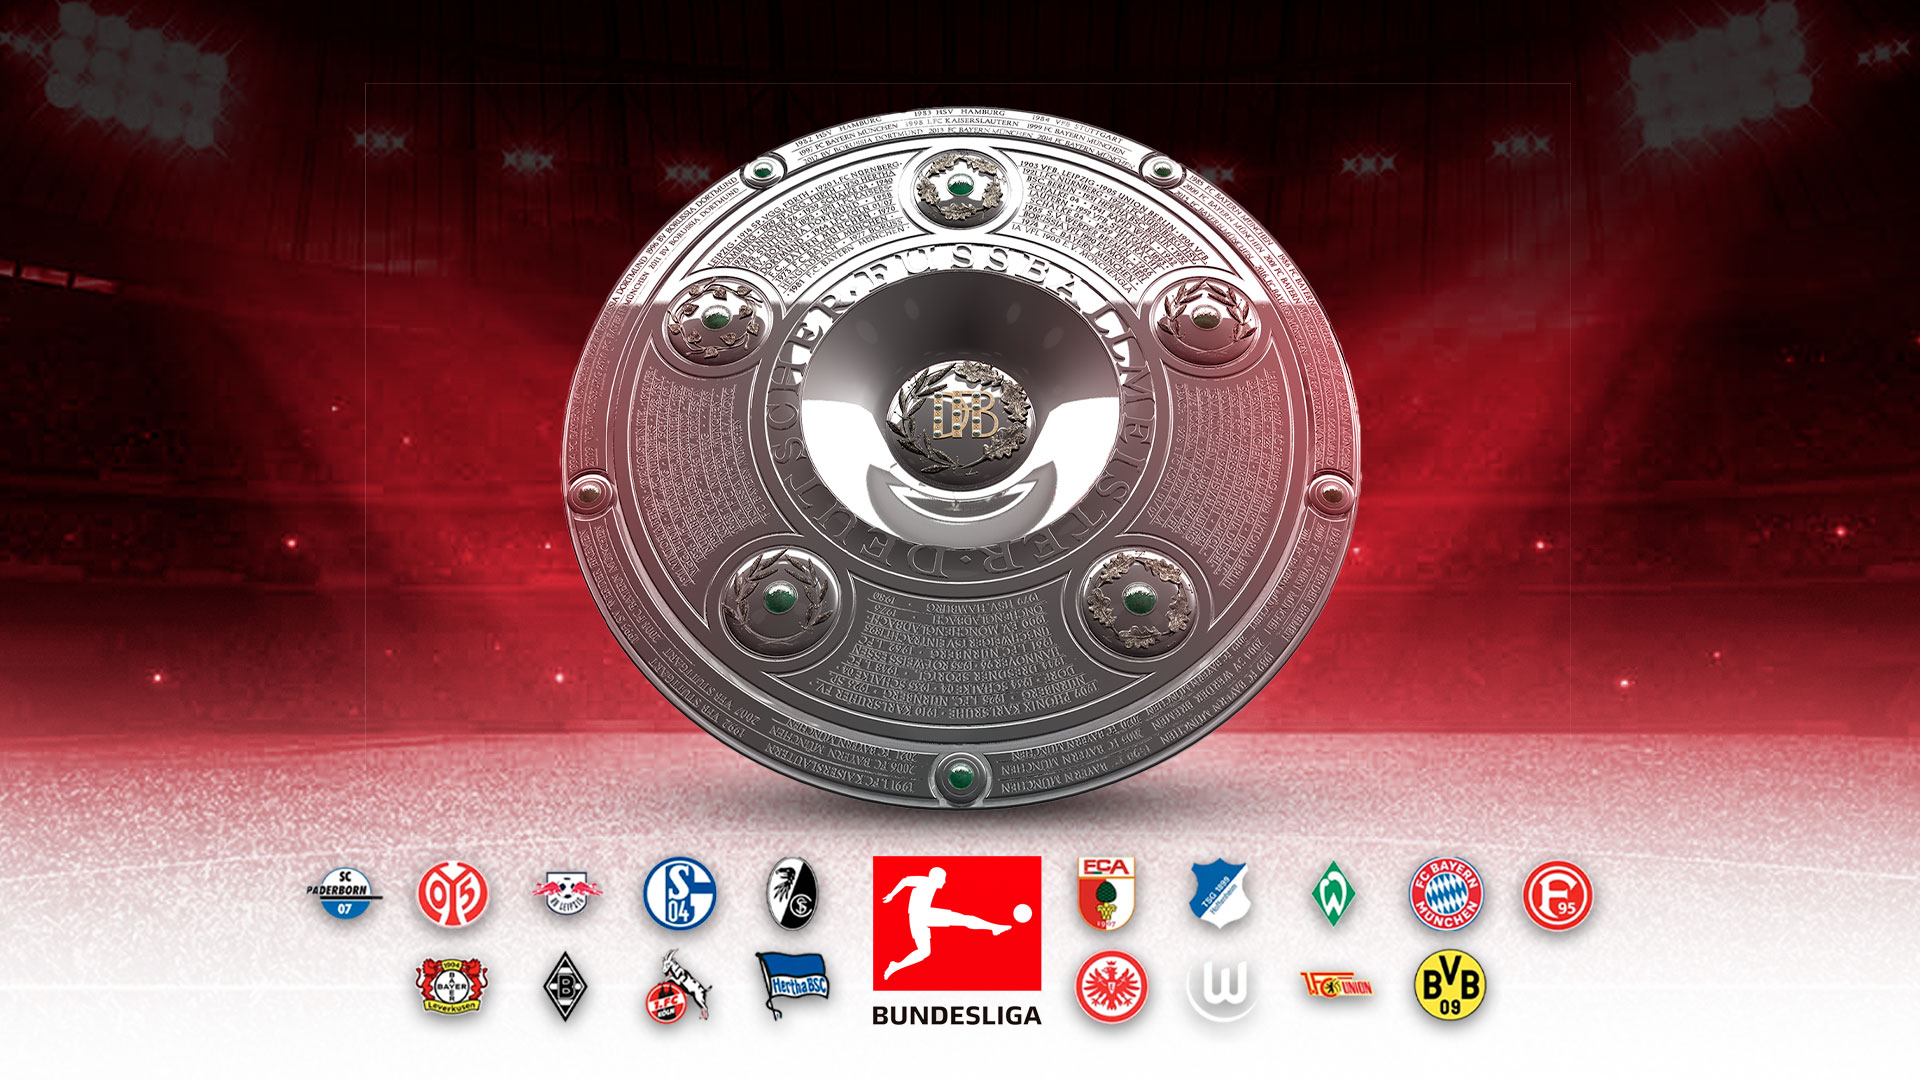 La Bundesliga está considerada como una de las mejores en el mundo. (Narrativa)